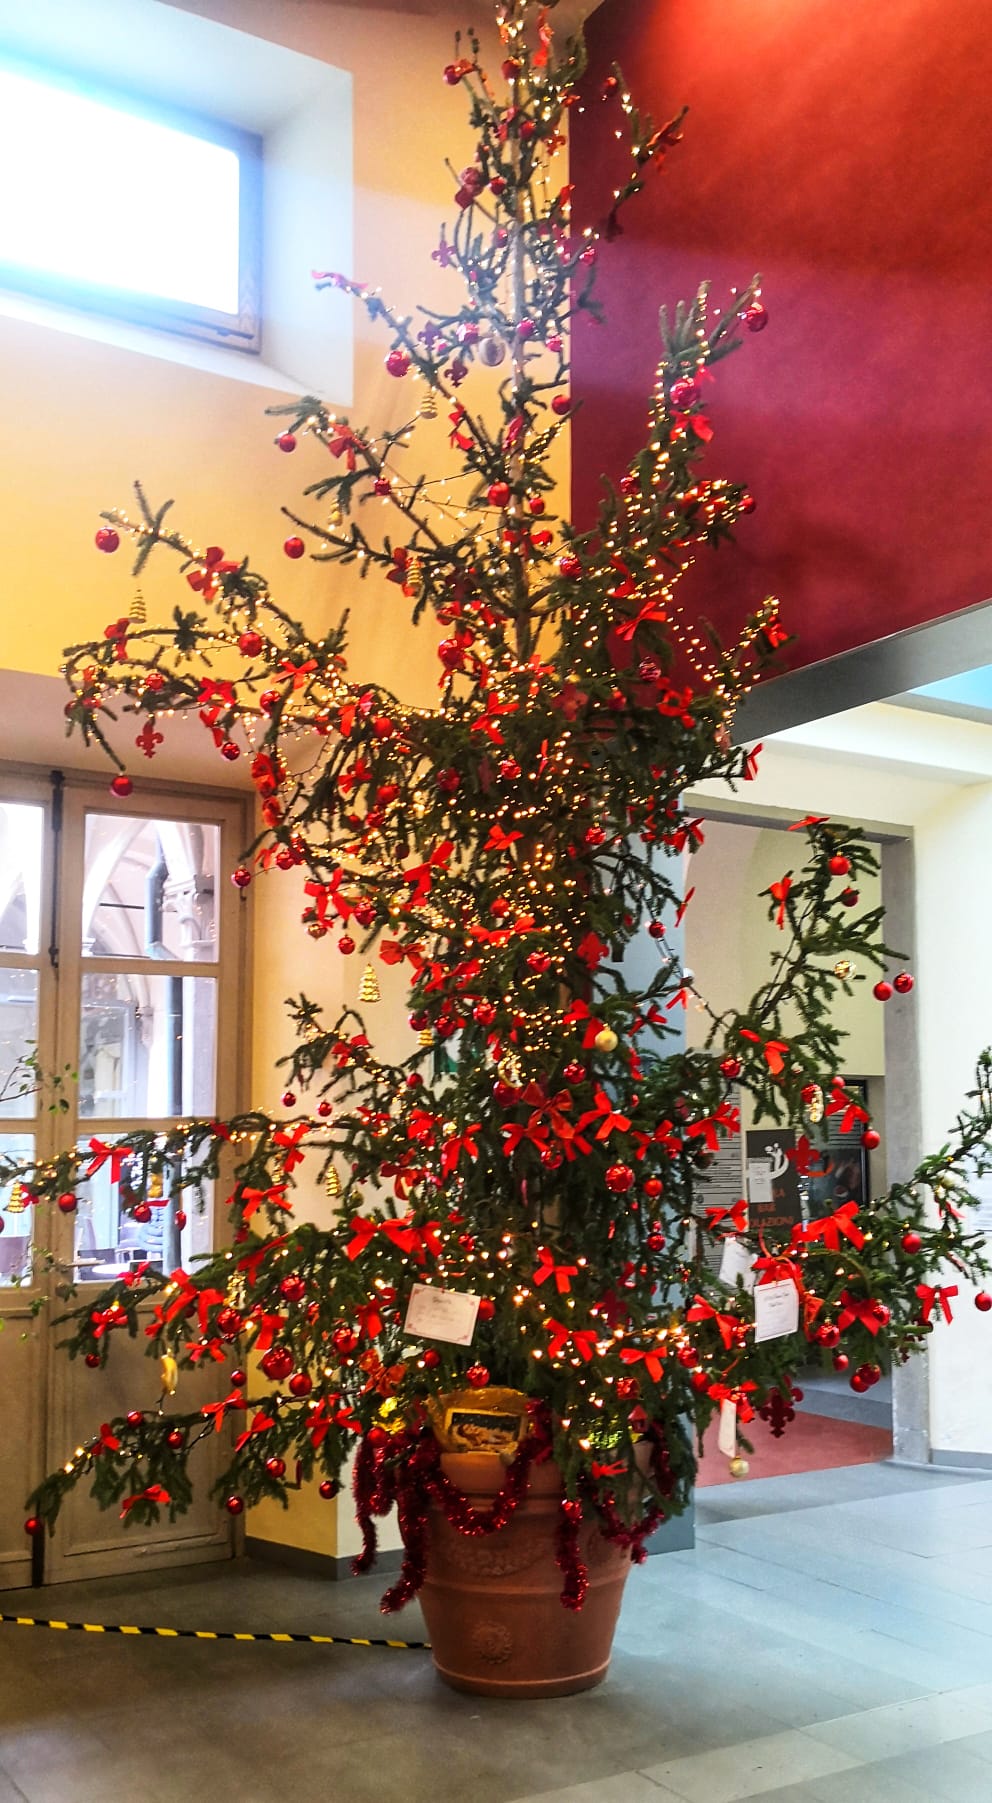 L'albero di Natale all'ingresso dell'ospedale (Fonte foto Ausl Toscana Centro)